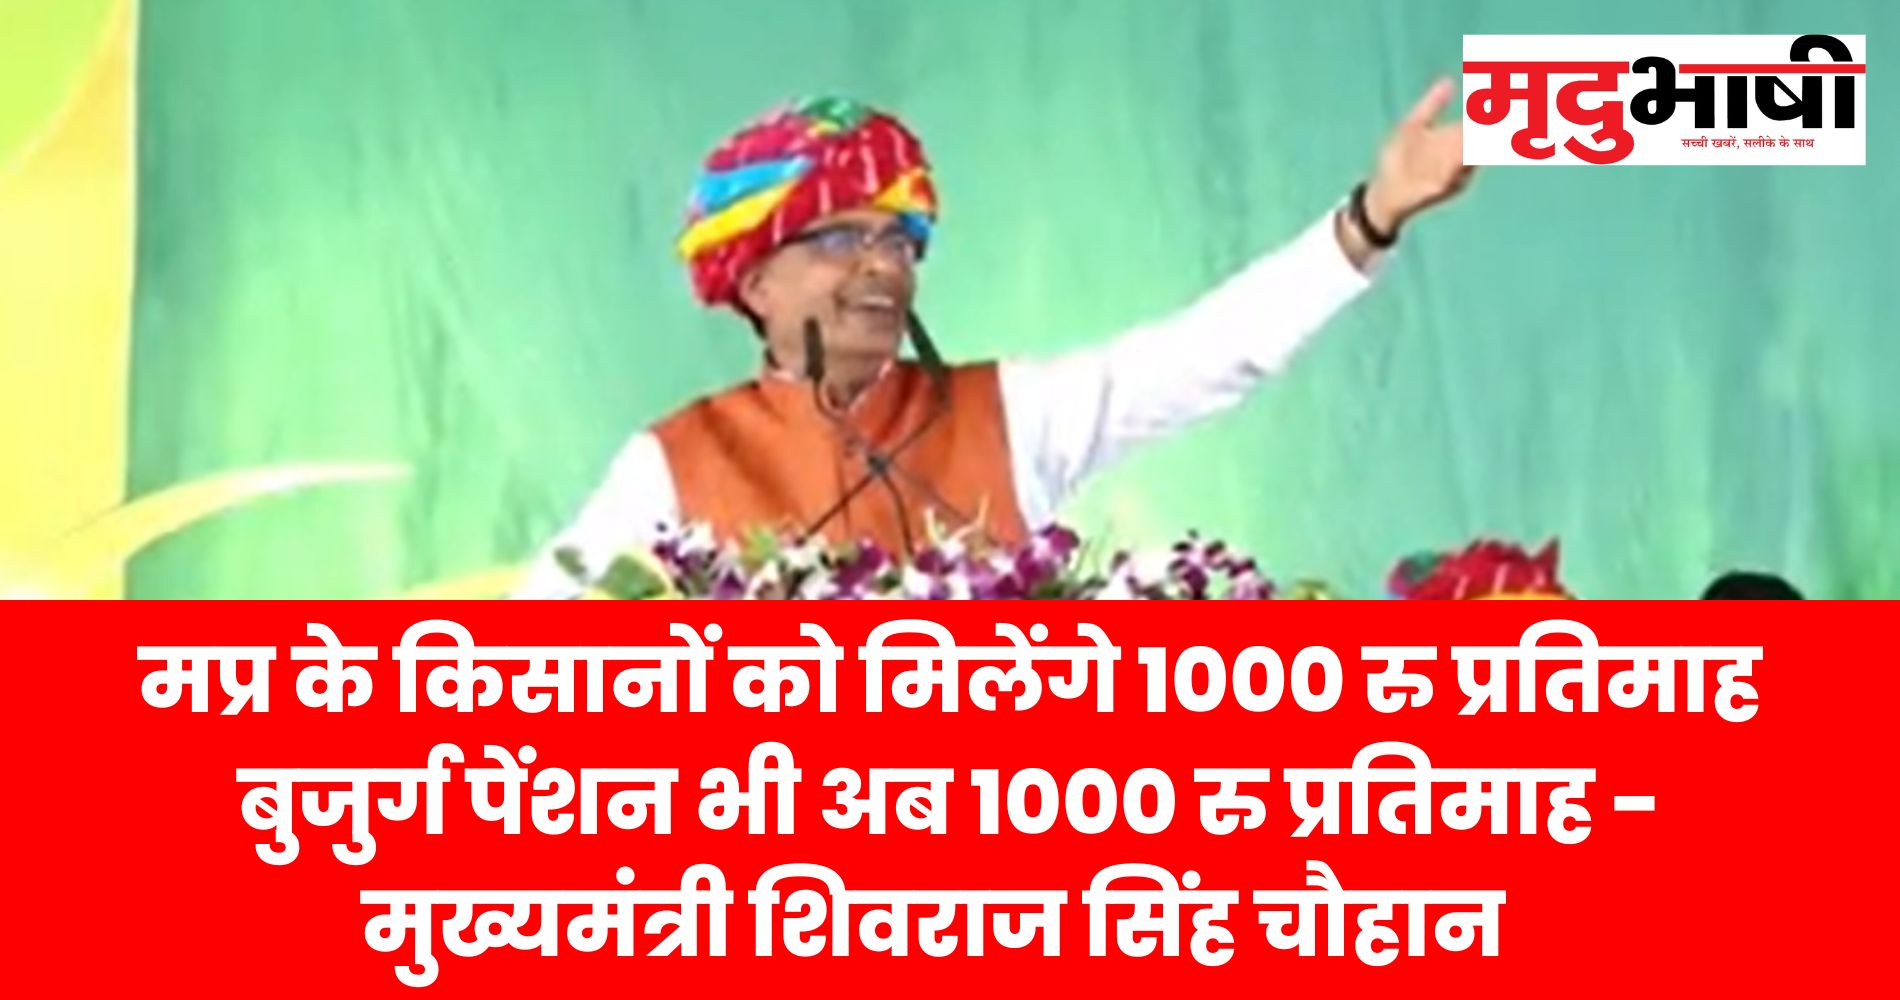 मप्र के किसानों को मिलेंगे 1000 रु प्रतिमाह बुजुर्ग पेंशन भी अब 1000 रु प्रतिमाह मिलेगी - शिवराज सिंह